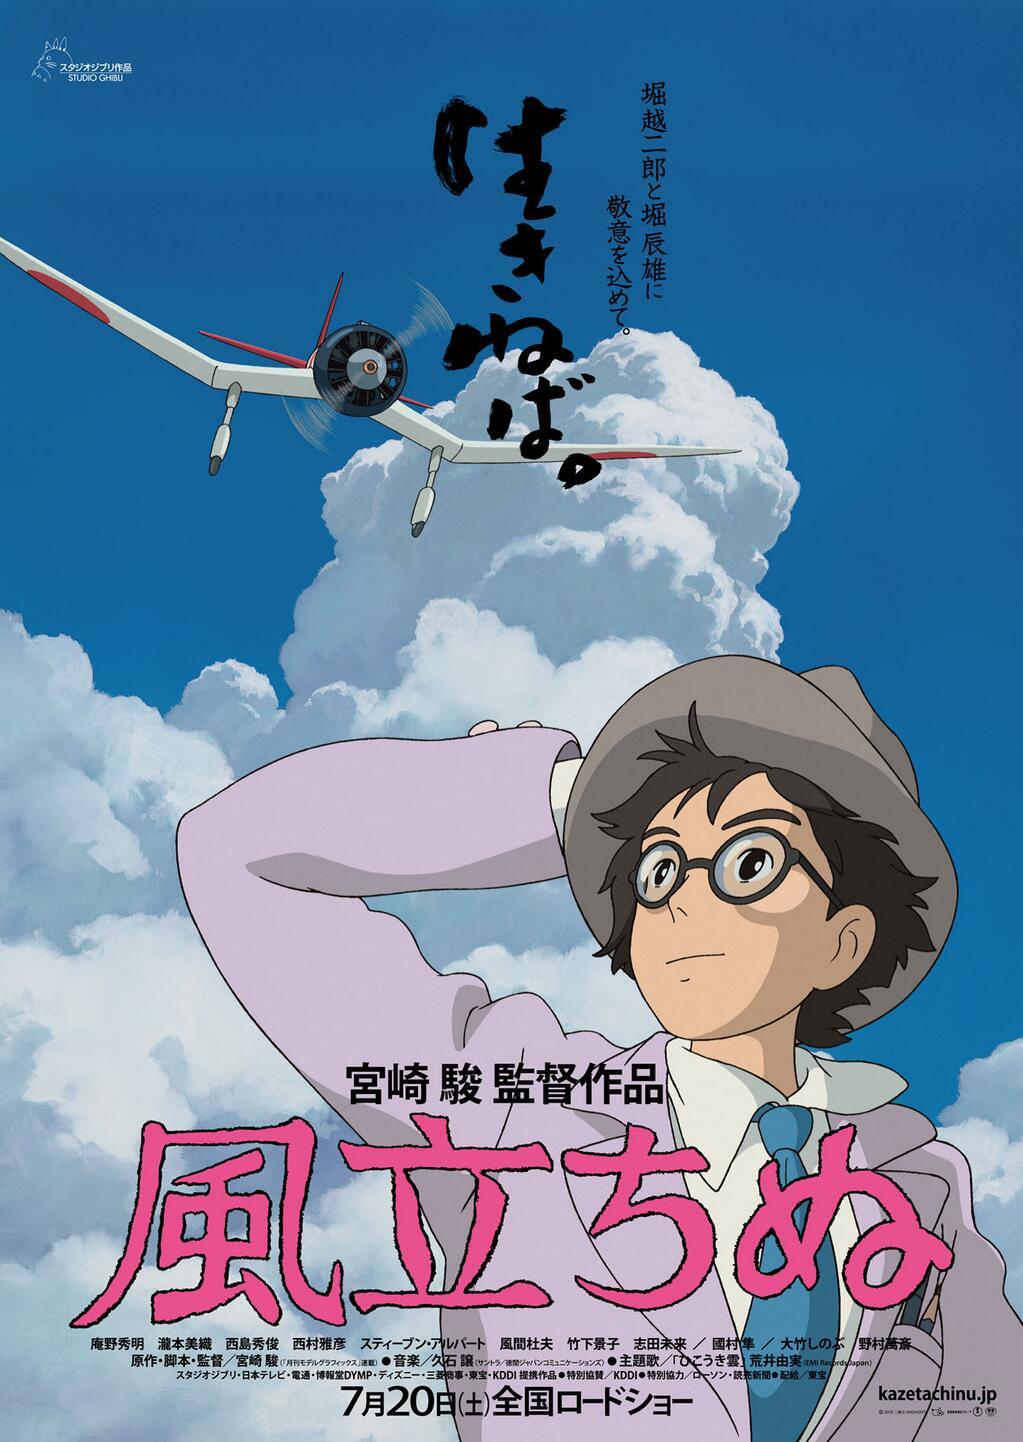 Miyazaki emocionado por su nueva película, fruto “del esfuerzo y la amistad”